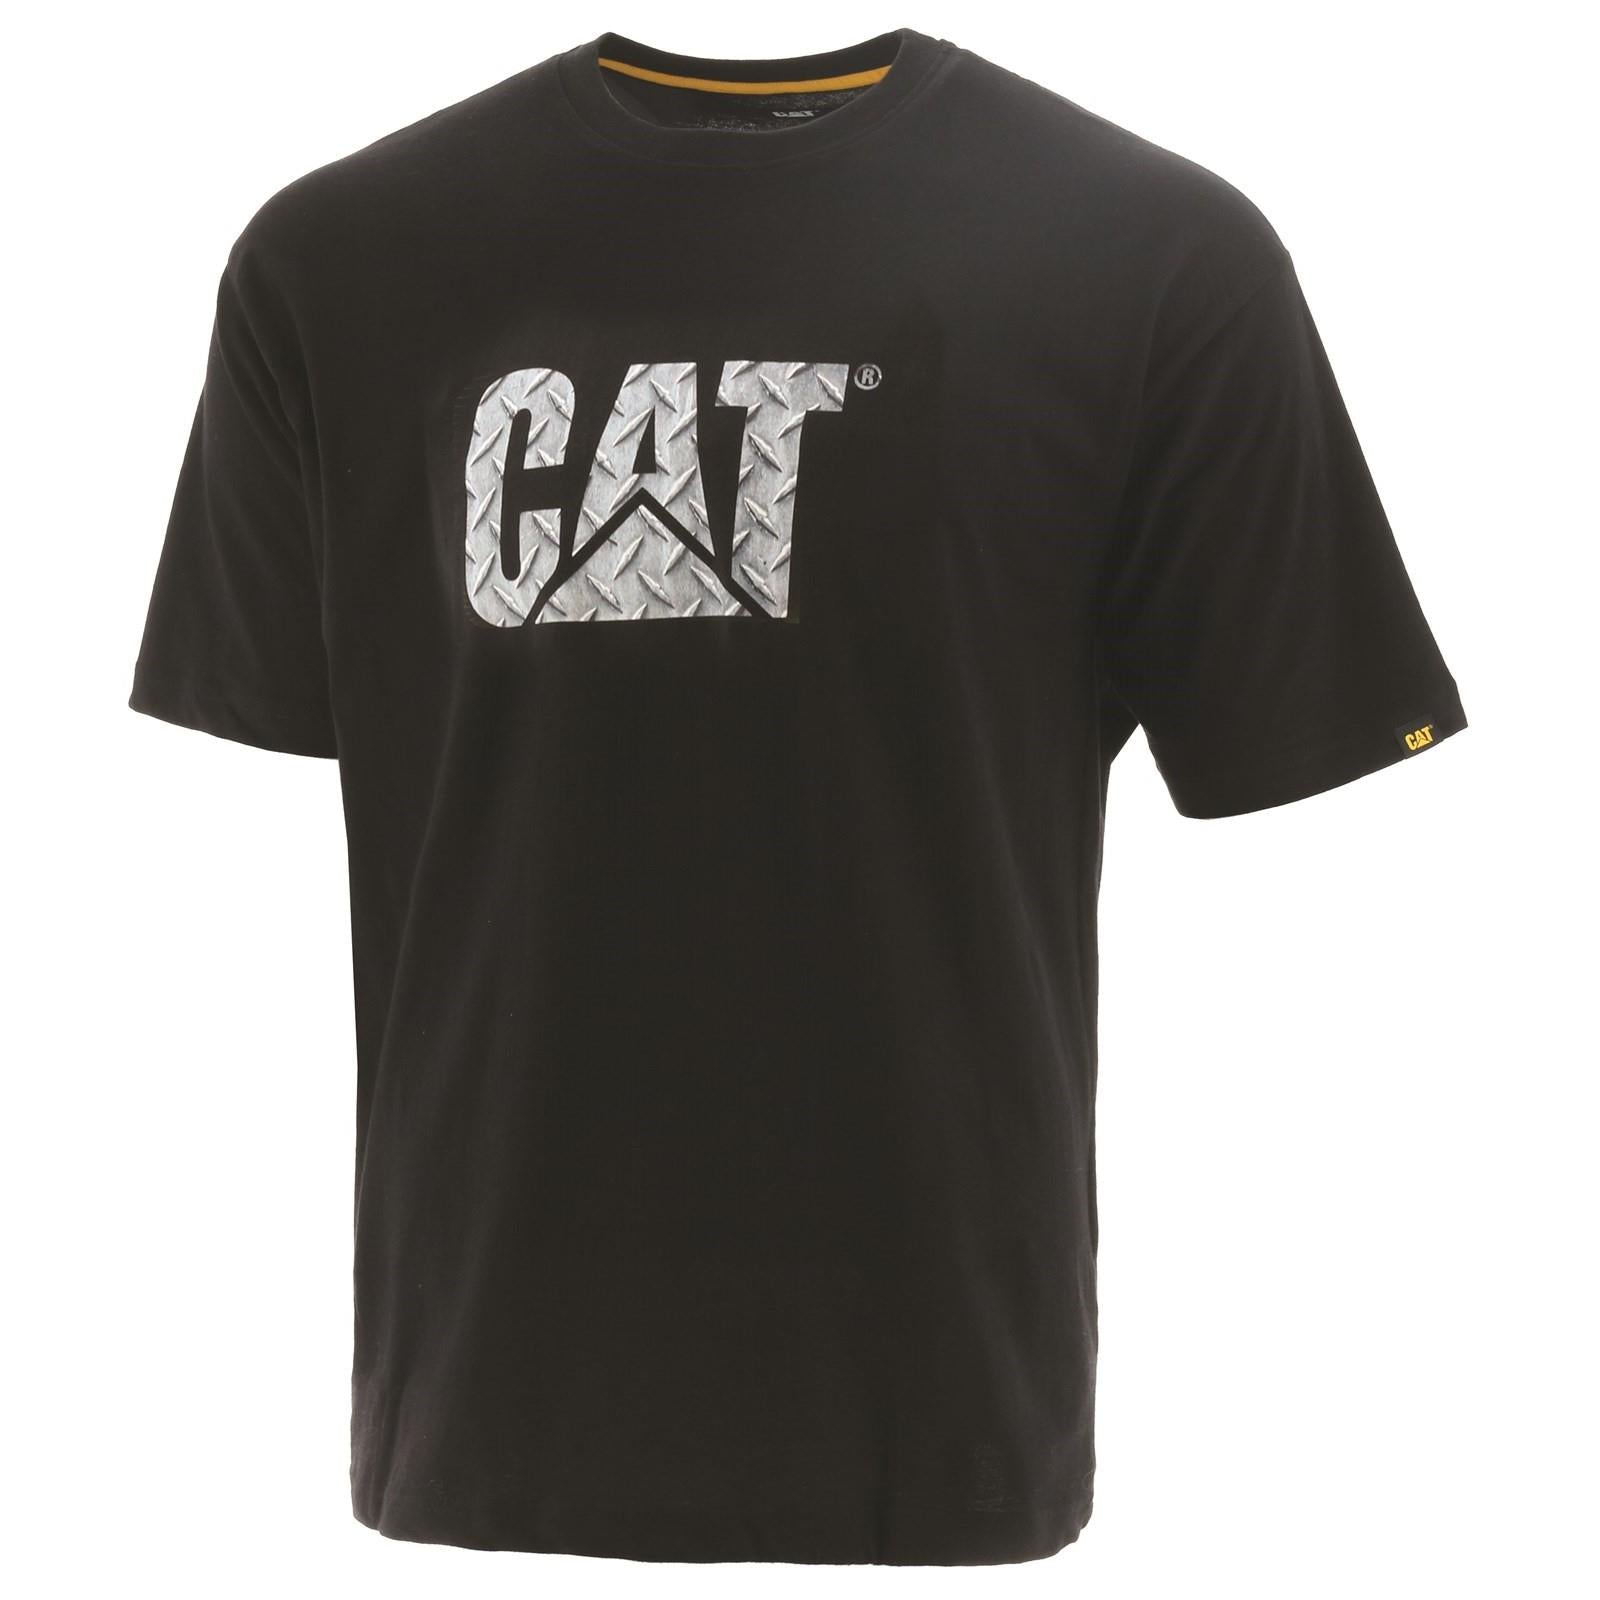 Caterpillar CAT black cotton checker-plate logo Tee T-shirt #1510296